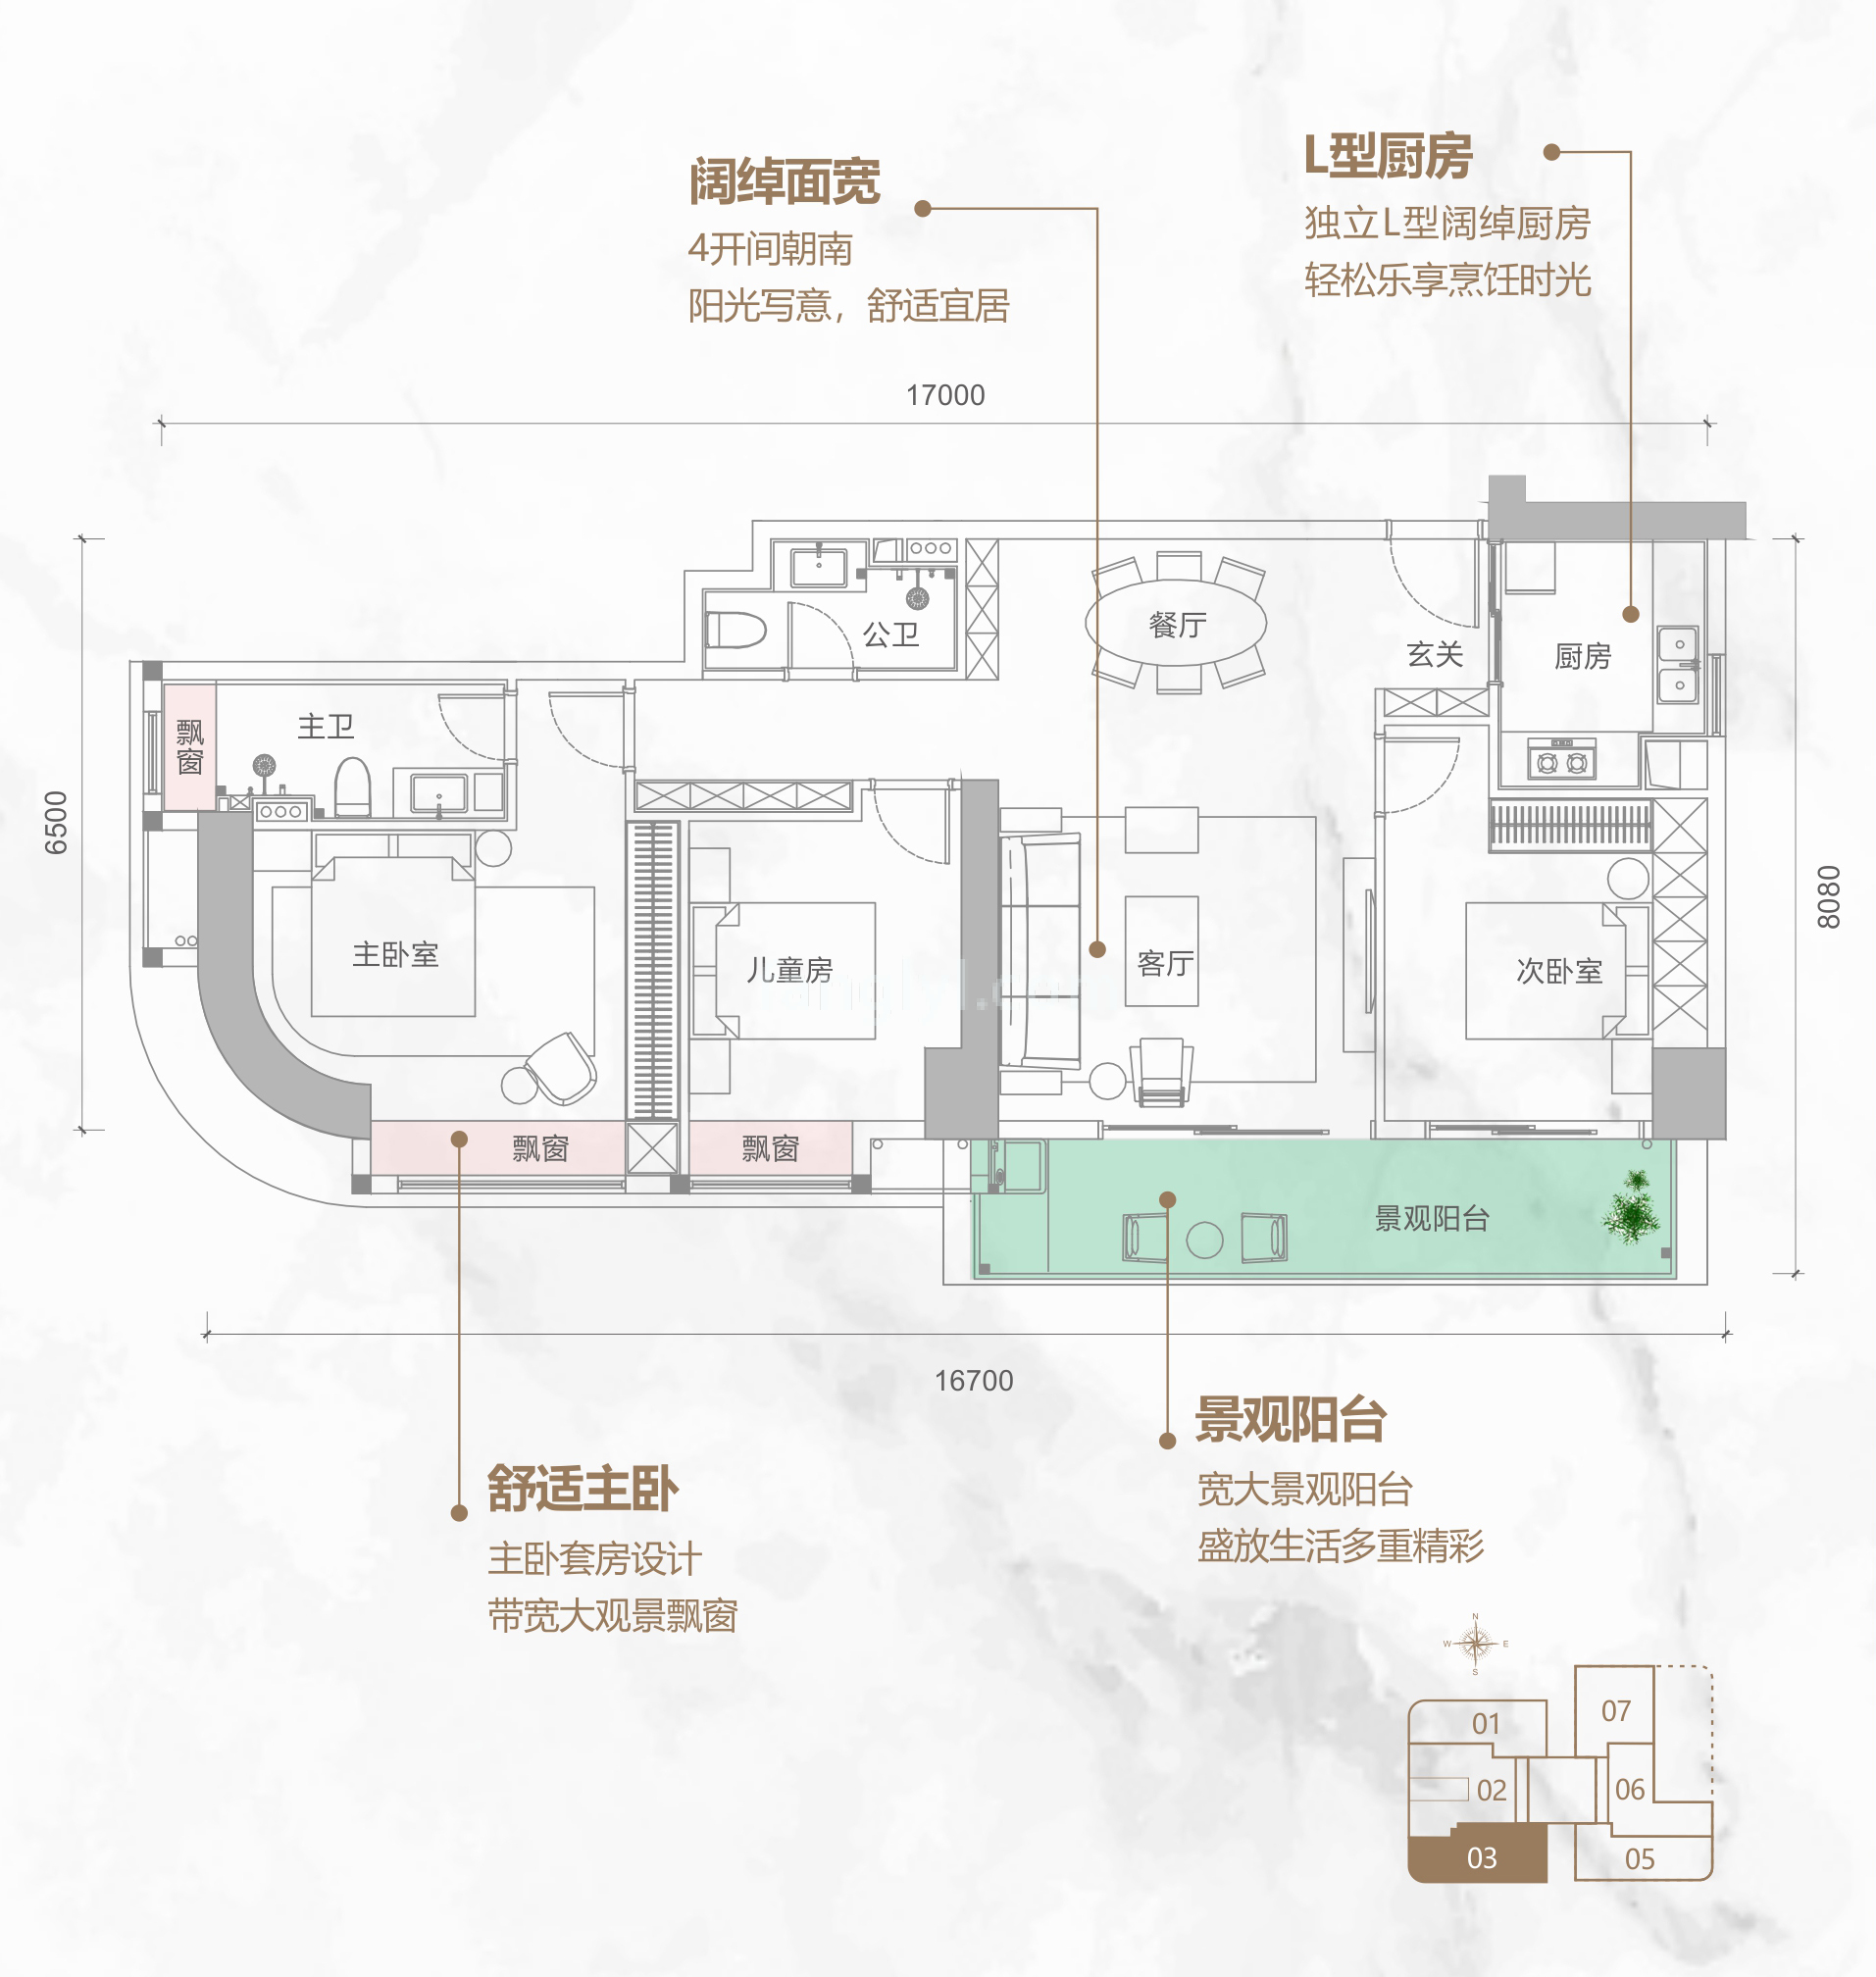 同康江语海 高层 A-03户型 3房1厅2卫 建筑面积104㎡ 